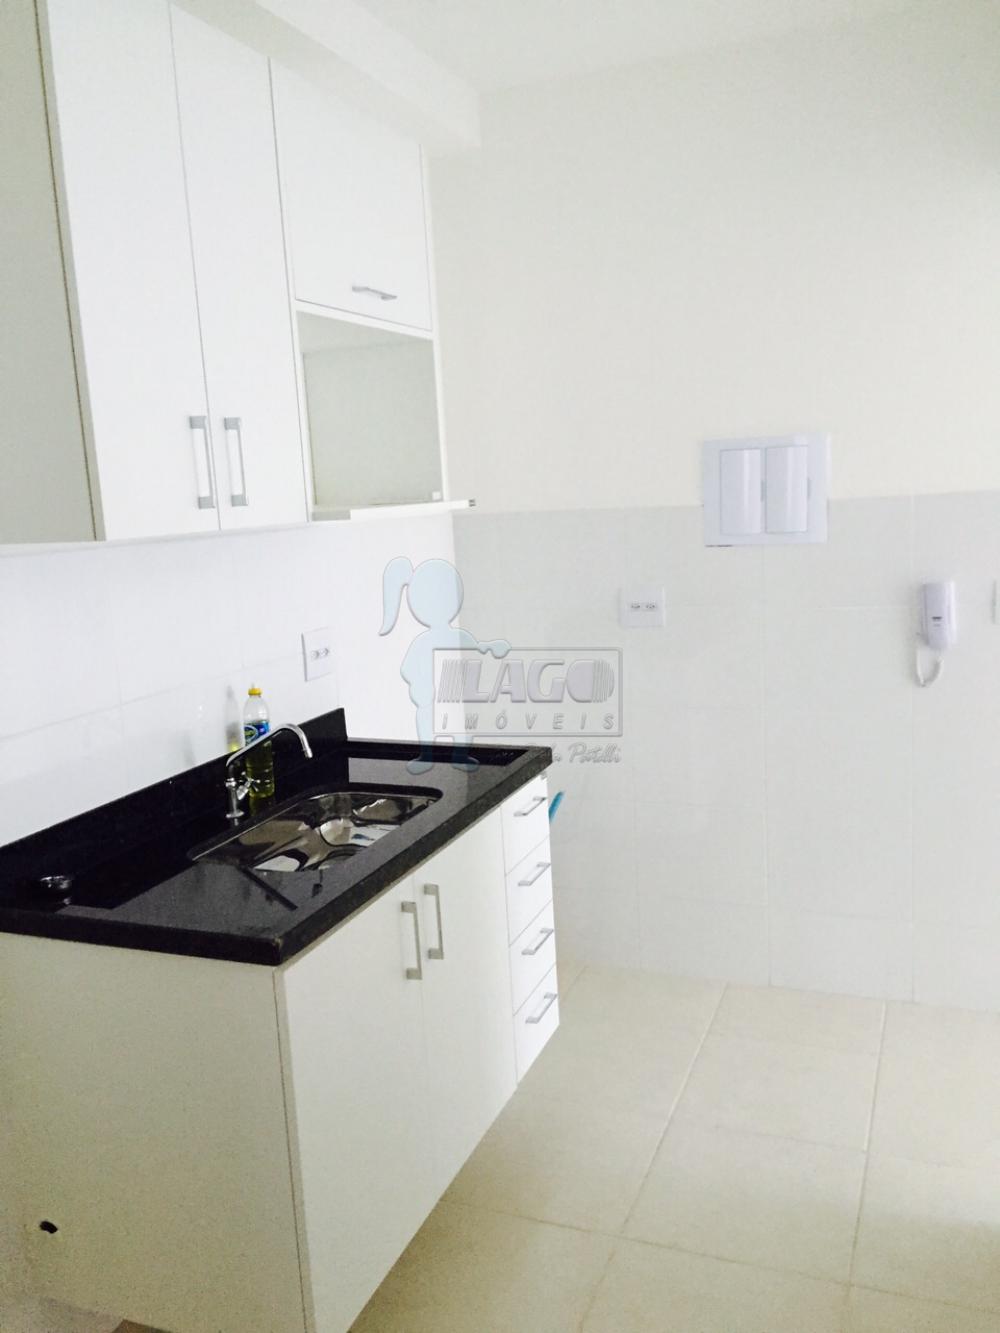 Alugar Apartamentos / Studio/Kitnet em Ribeirão Preto R$ 1.800,00 - Foto 2